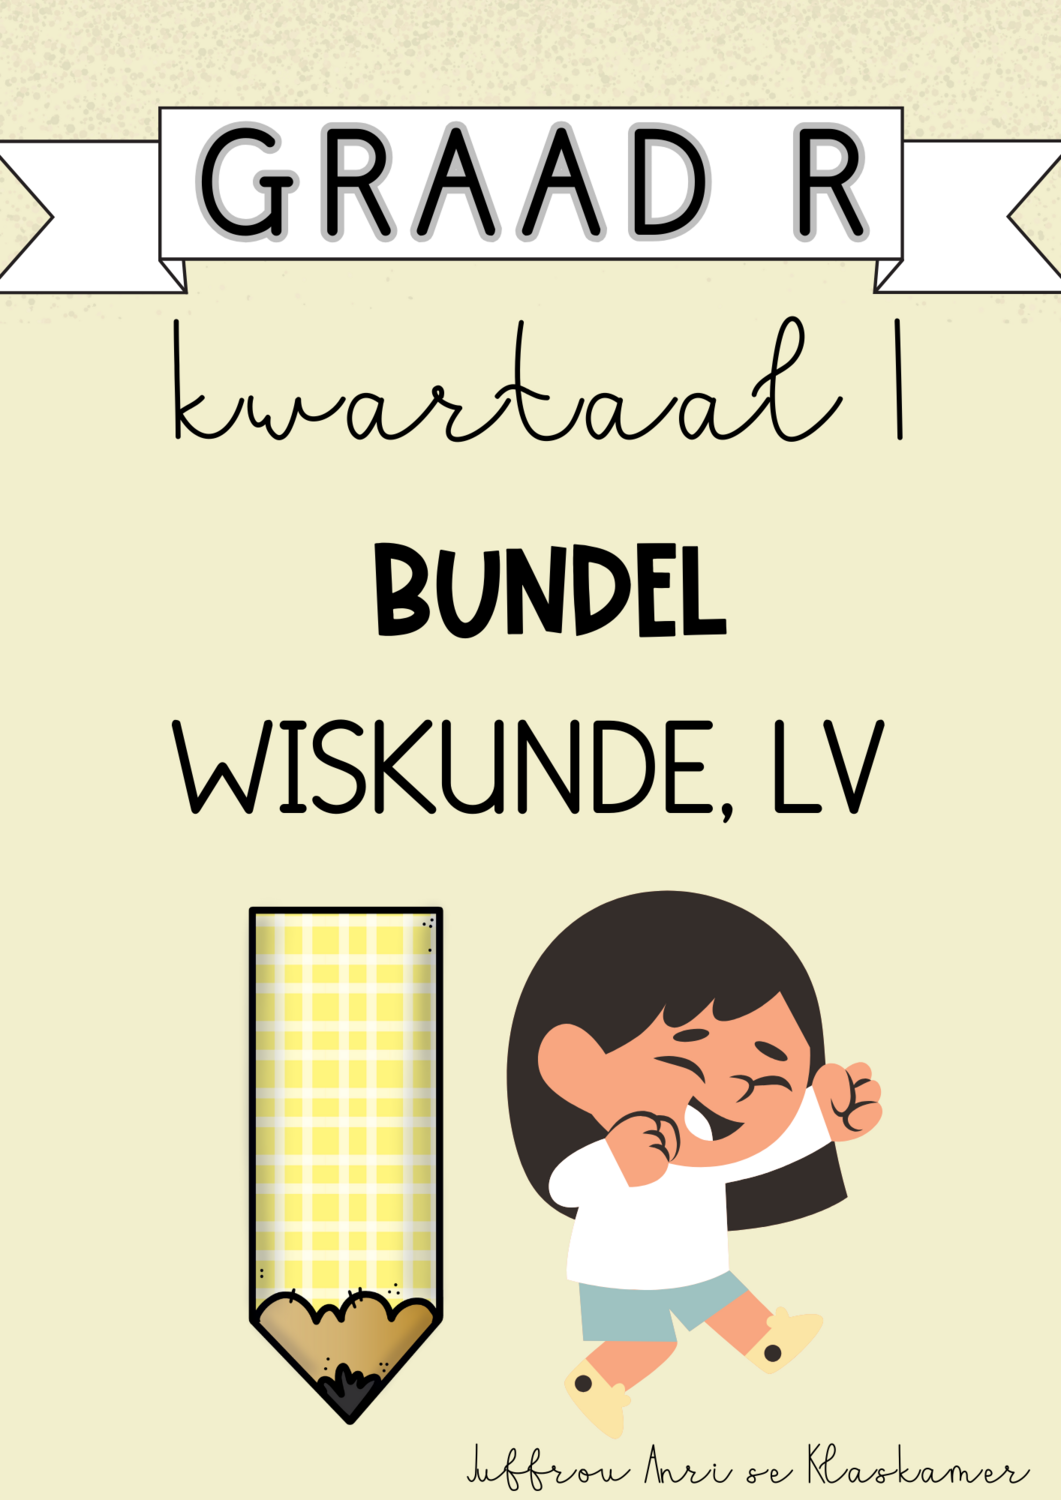 GRAAD R KWARTAAL 1 BUNDEL